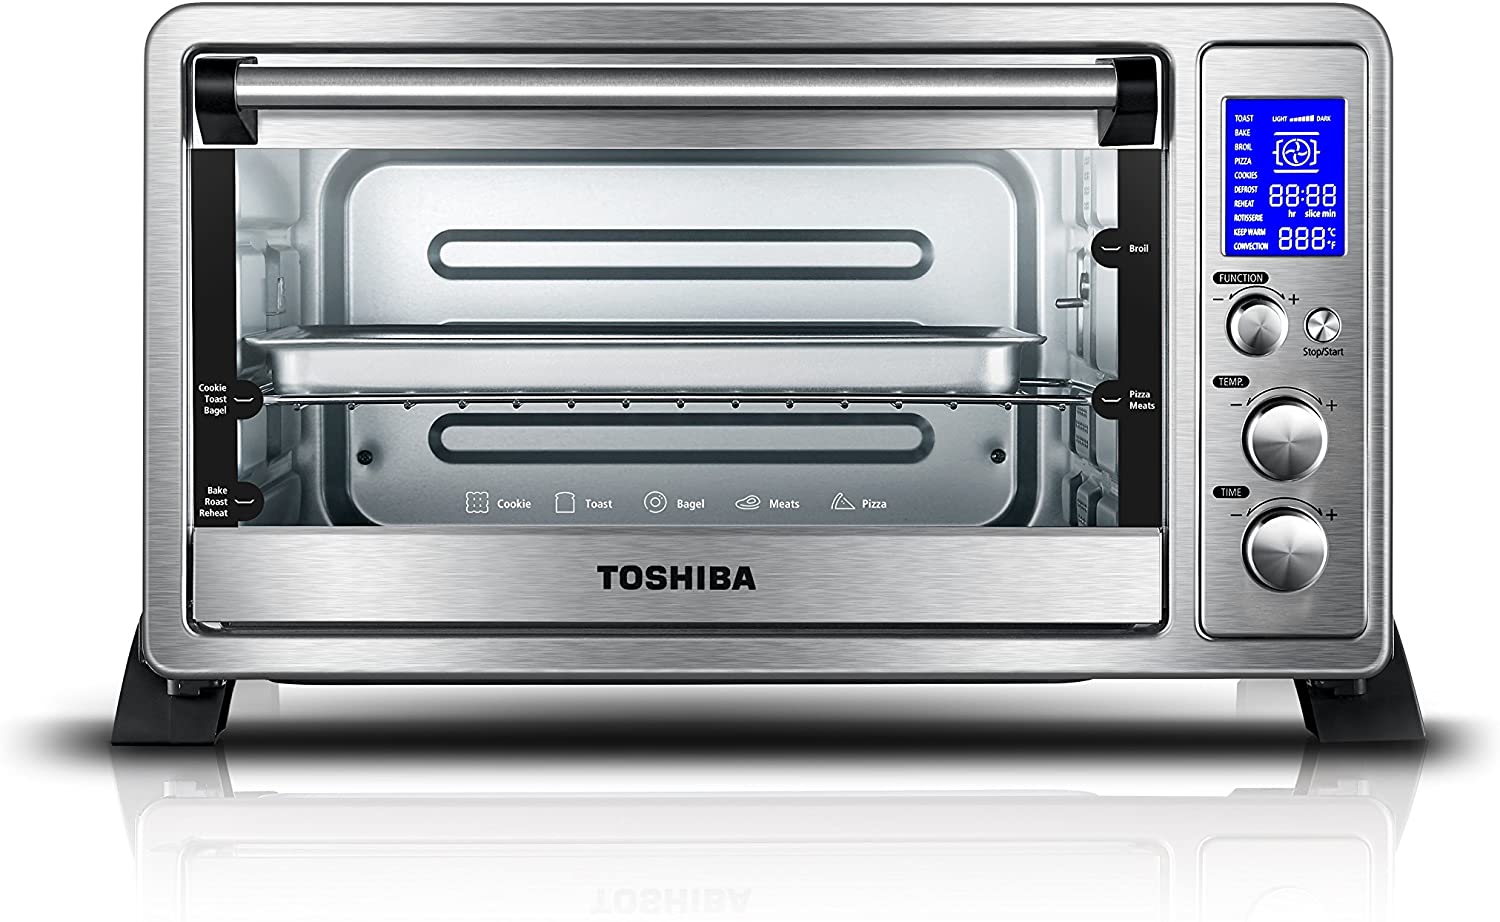 【亚马逊折扣随时无】Toshiba 9合1空气对流智能不锈钢烤箱$89.99